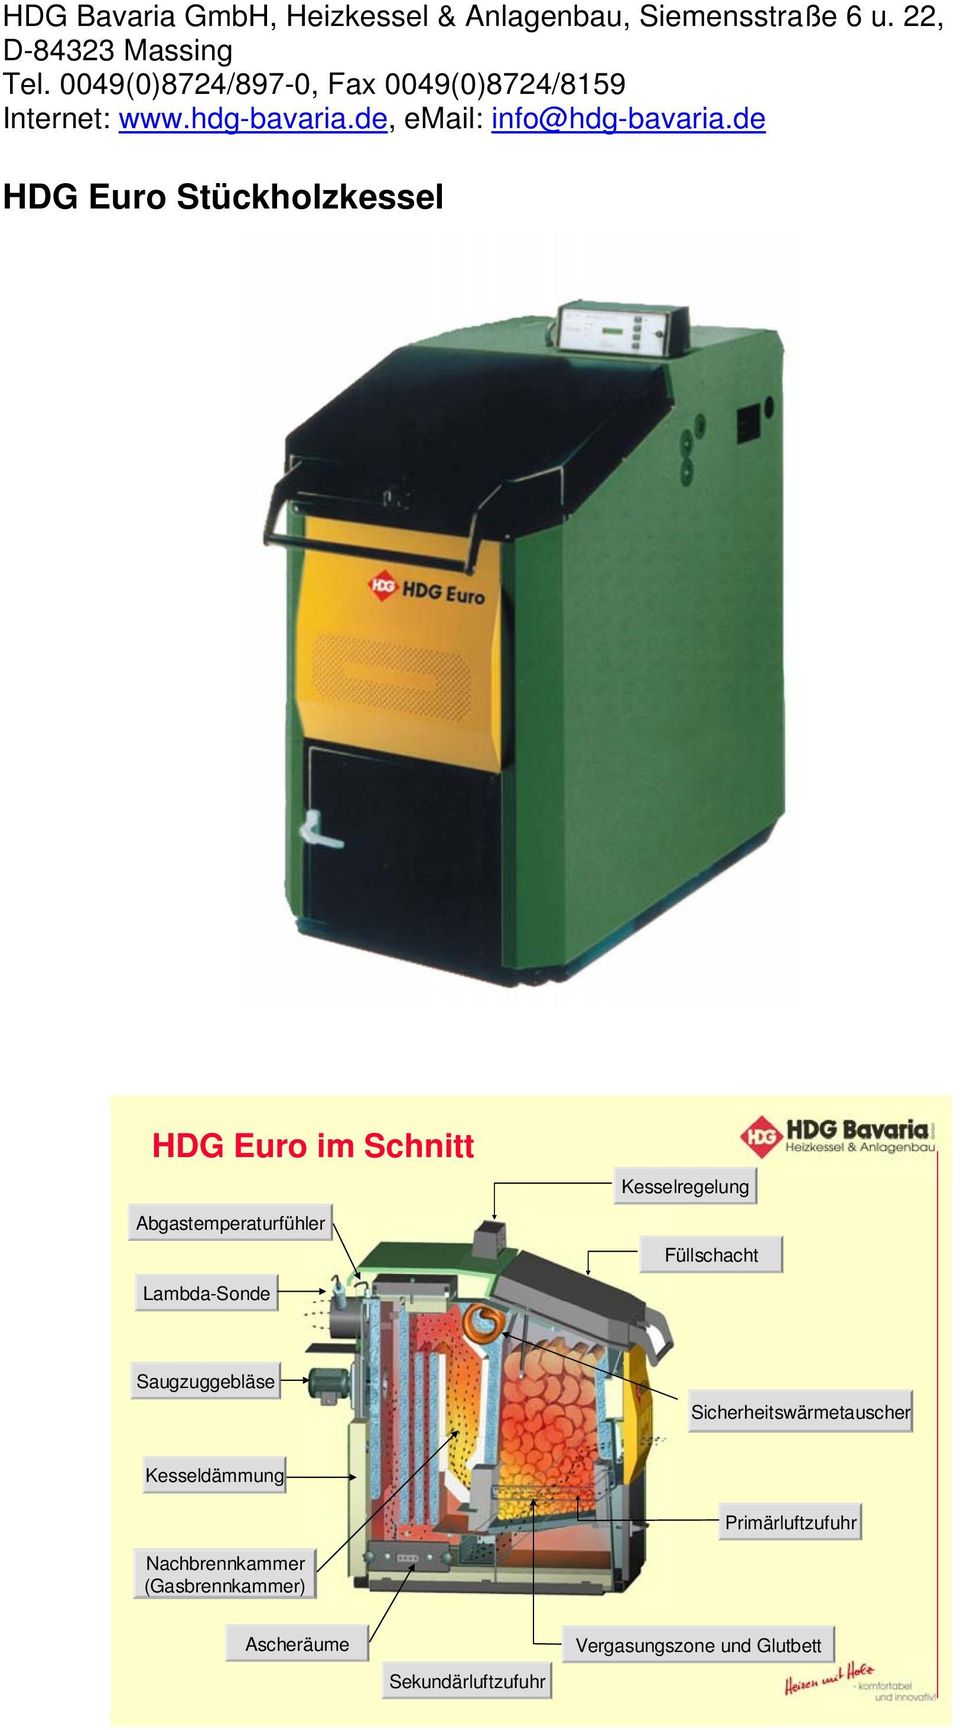 de HDG Euro Stückholzkessel HDG Euro im Schnitt Abgastemperaturfühler Kesselregelung Füllschacht Lambda-Sonde